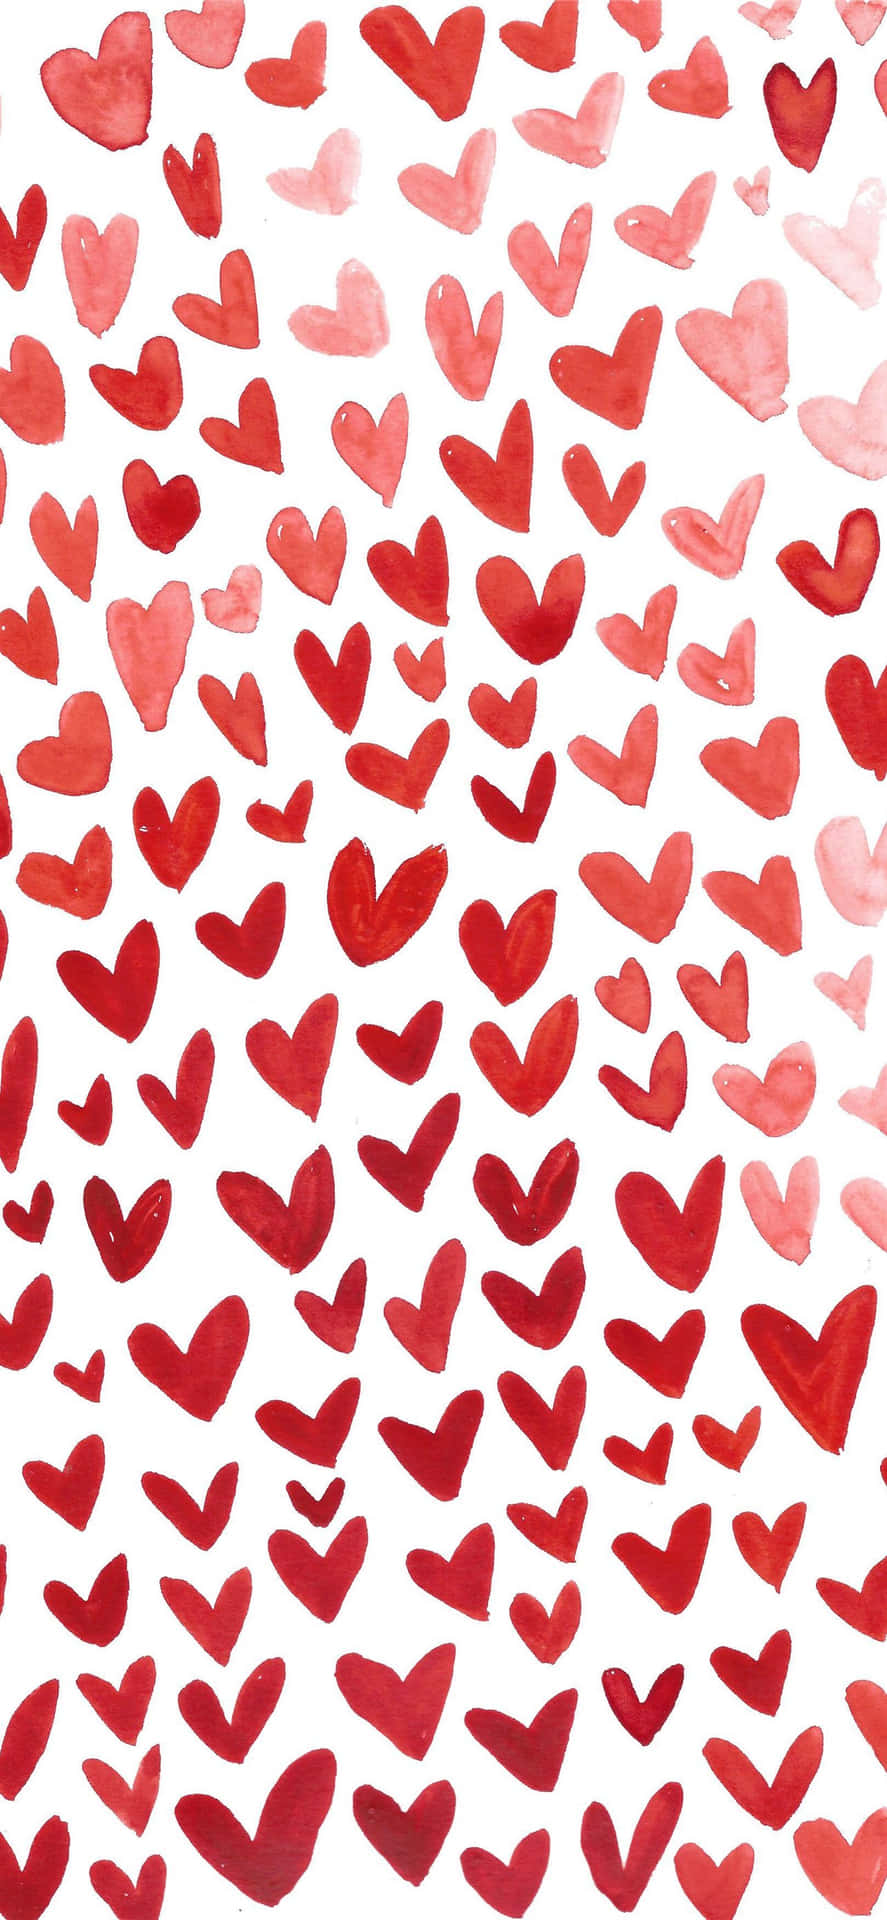 Aesthetic Valentine's Day Lovely Heart Digital Art Wallpaper